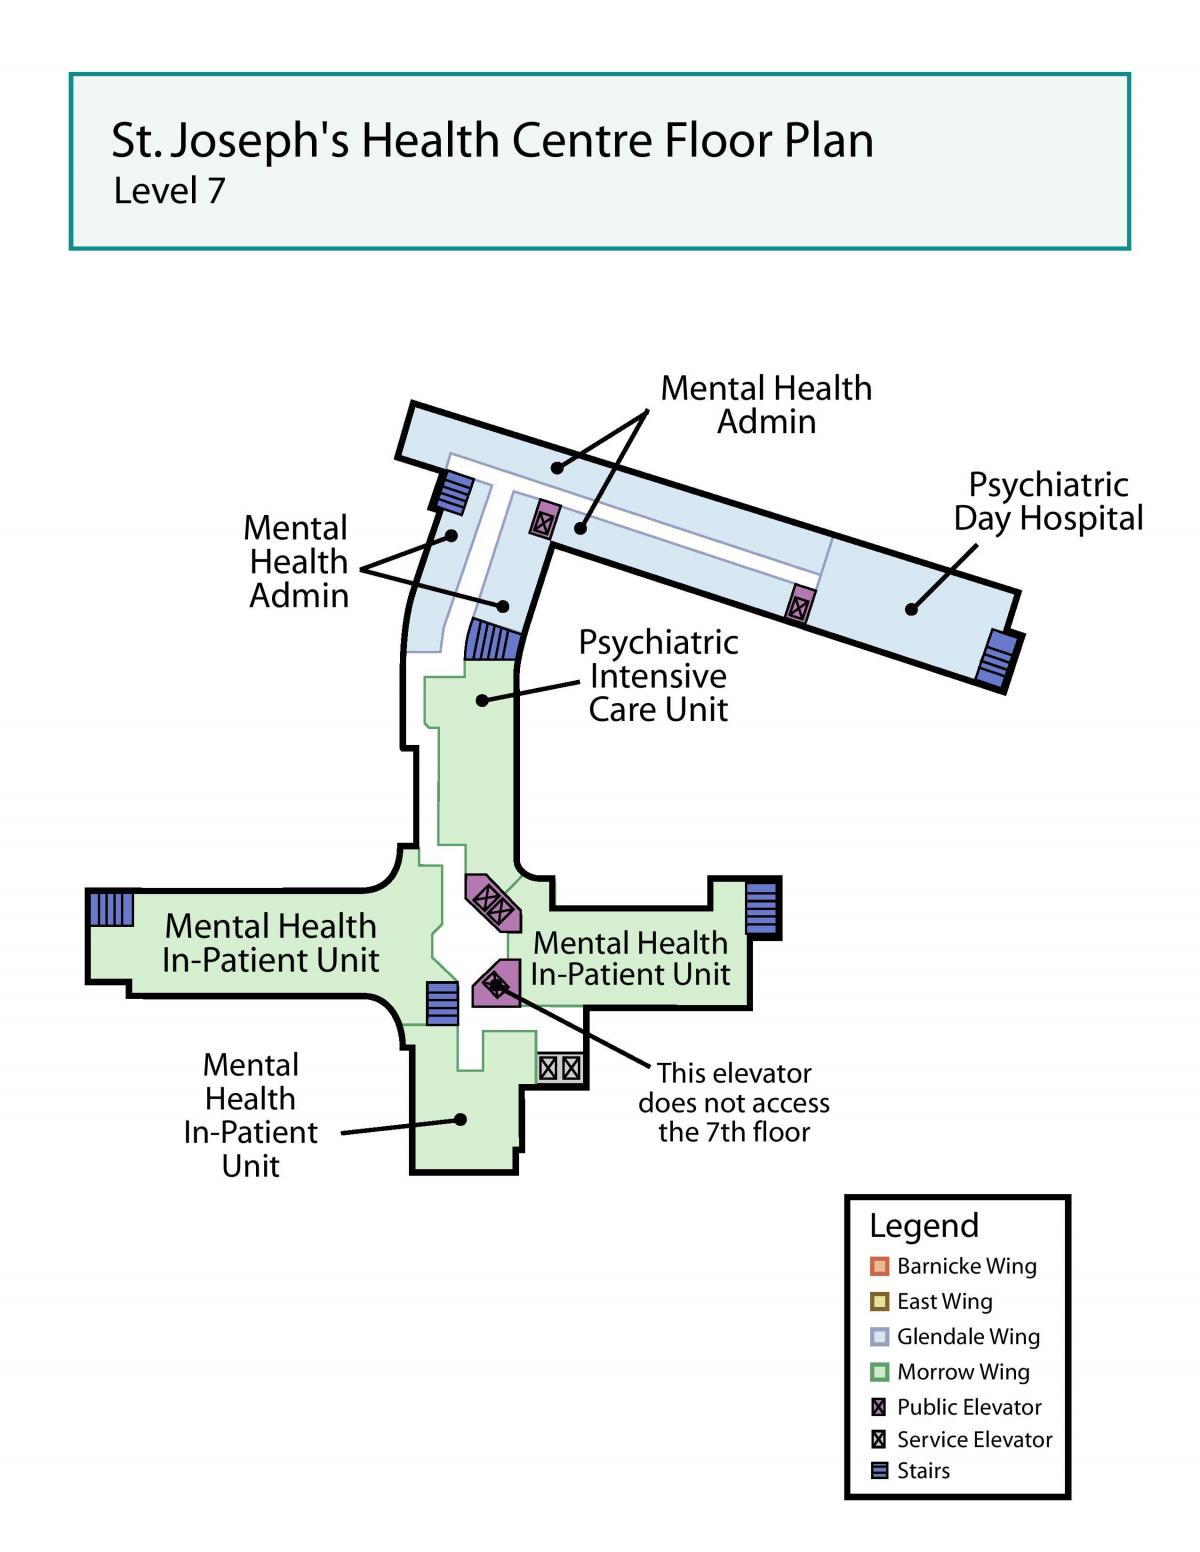 Картицу медицинском центру Светог Јосипа у Торонту 7